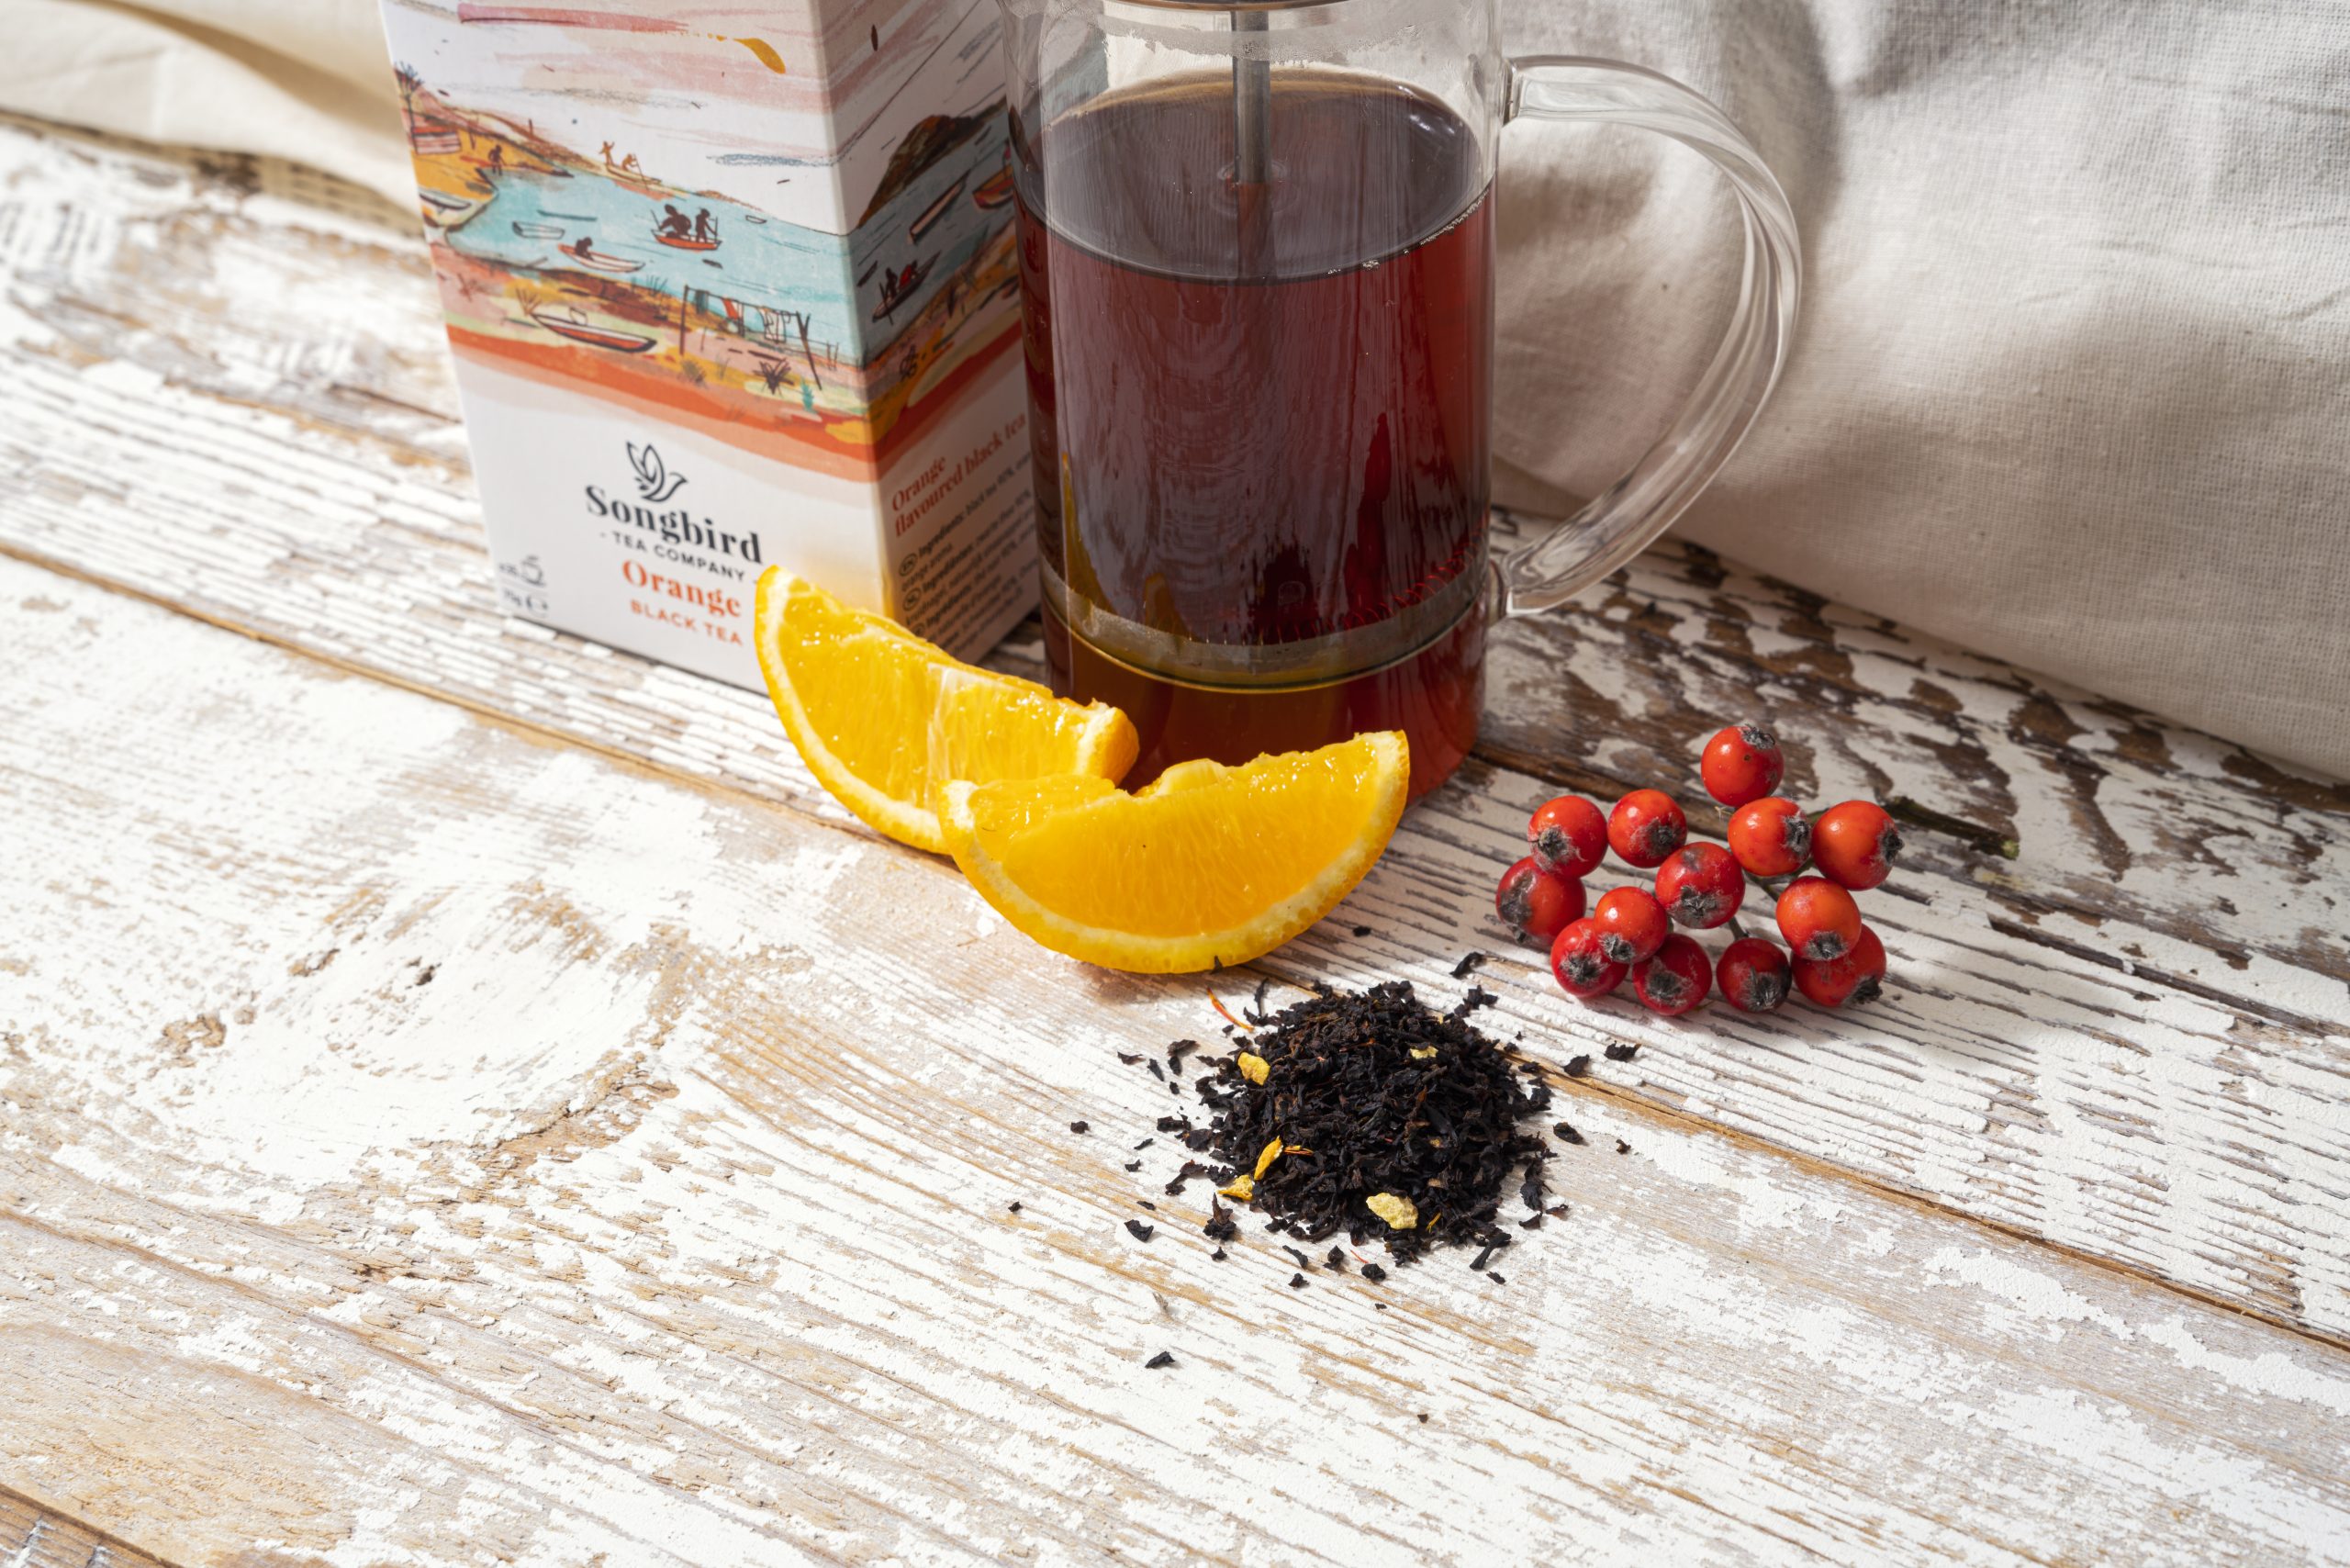 czarna herbata z dodatkiem pomarańczy od Songbird